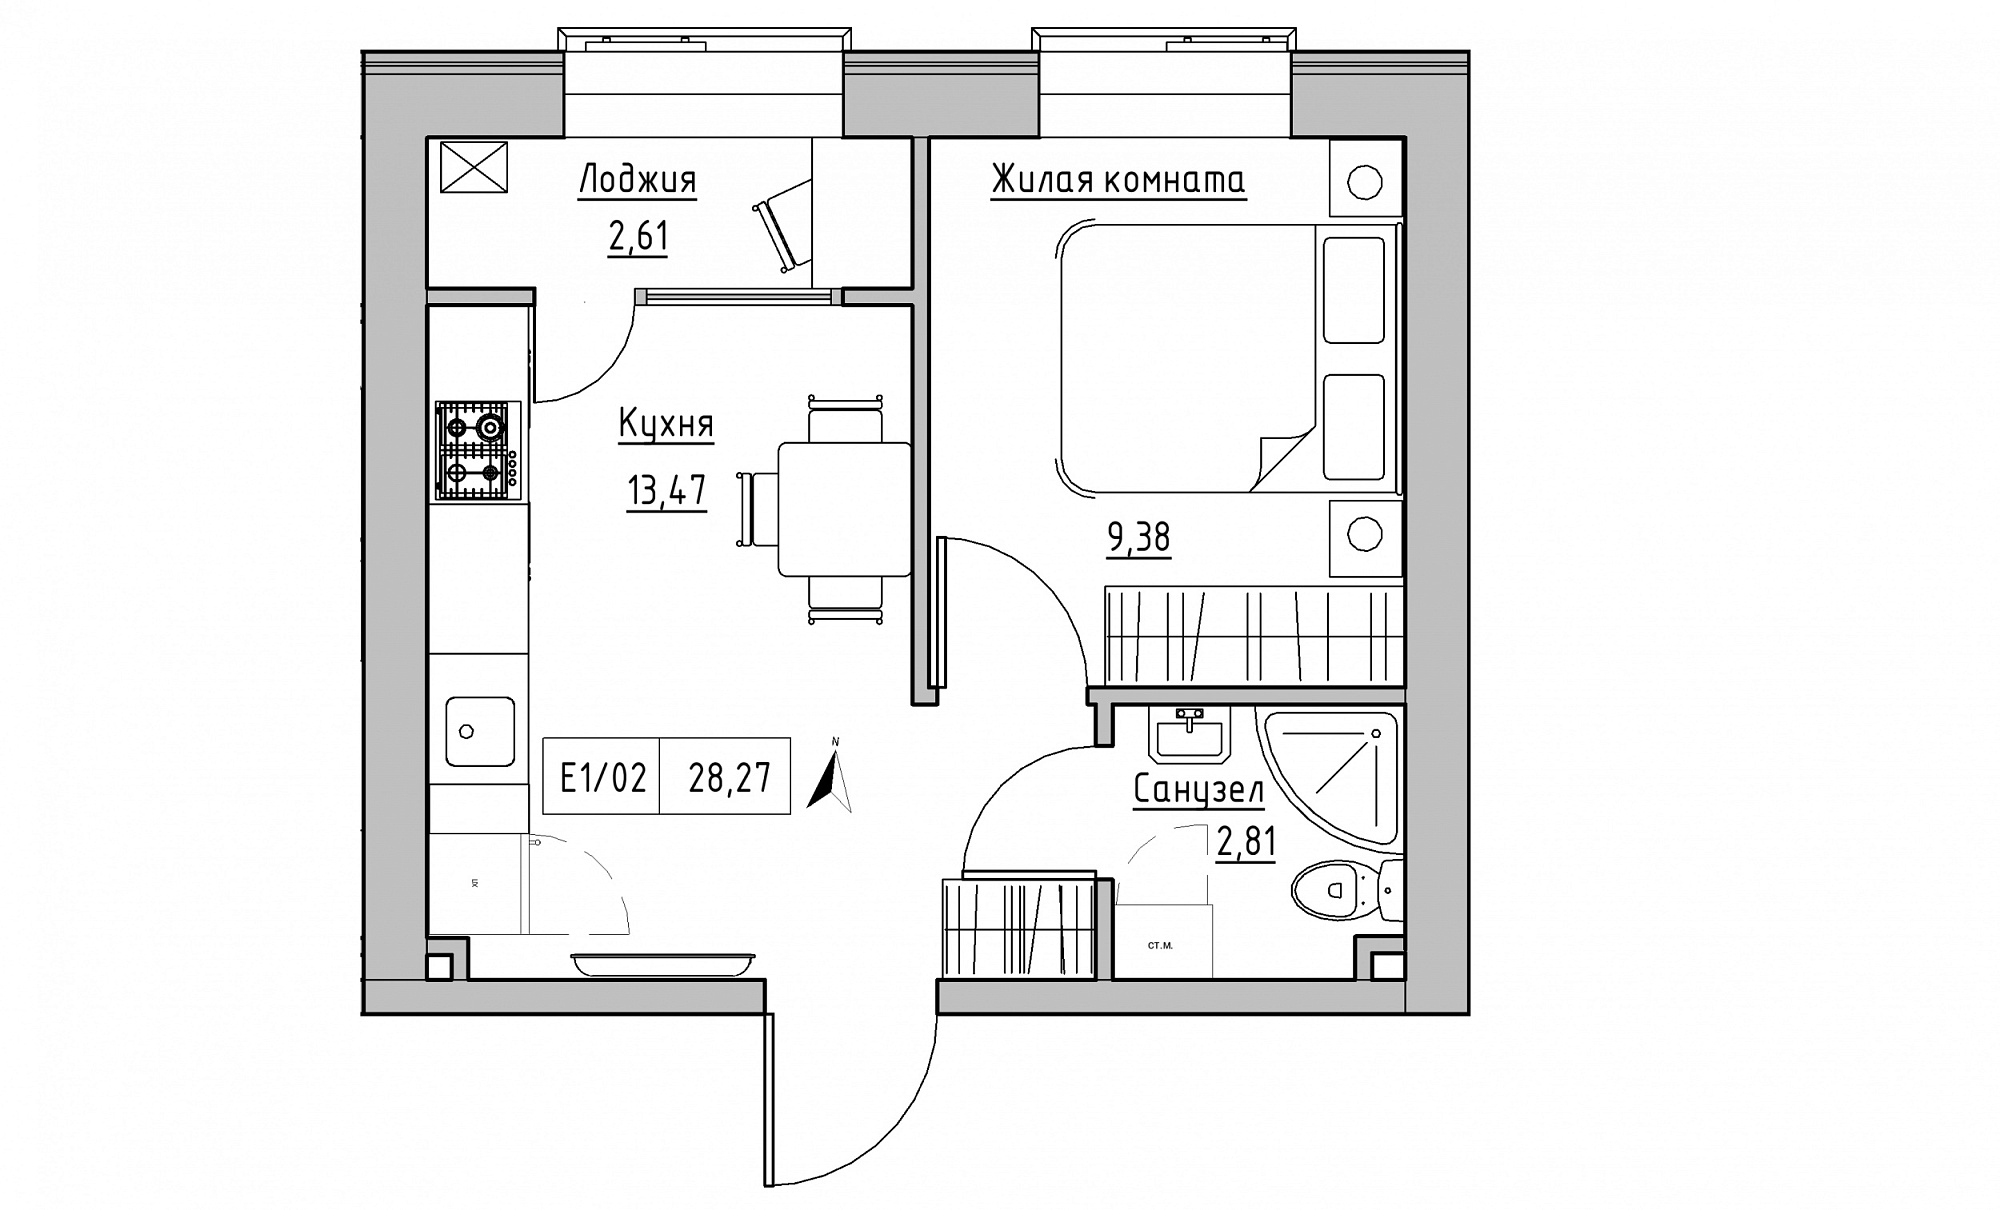 Планировка 1-к квартира площей 28.27м2, KS-015-02/0015.